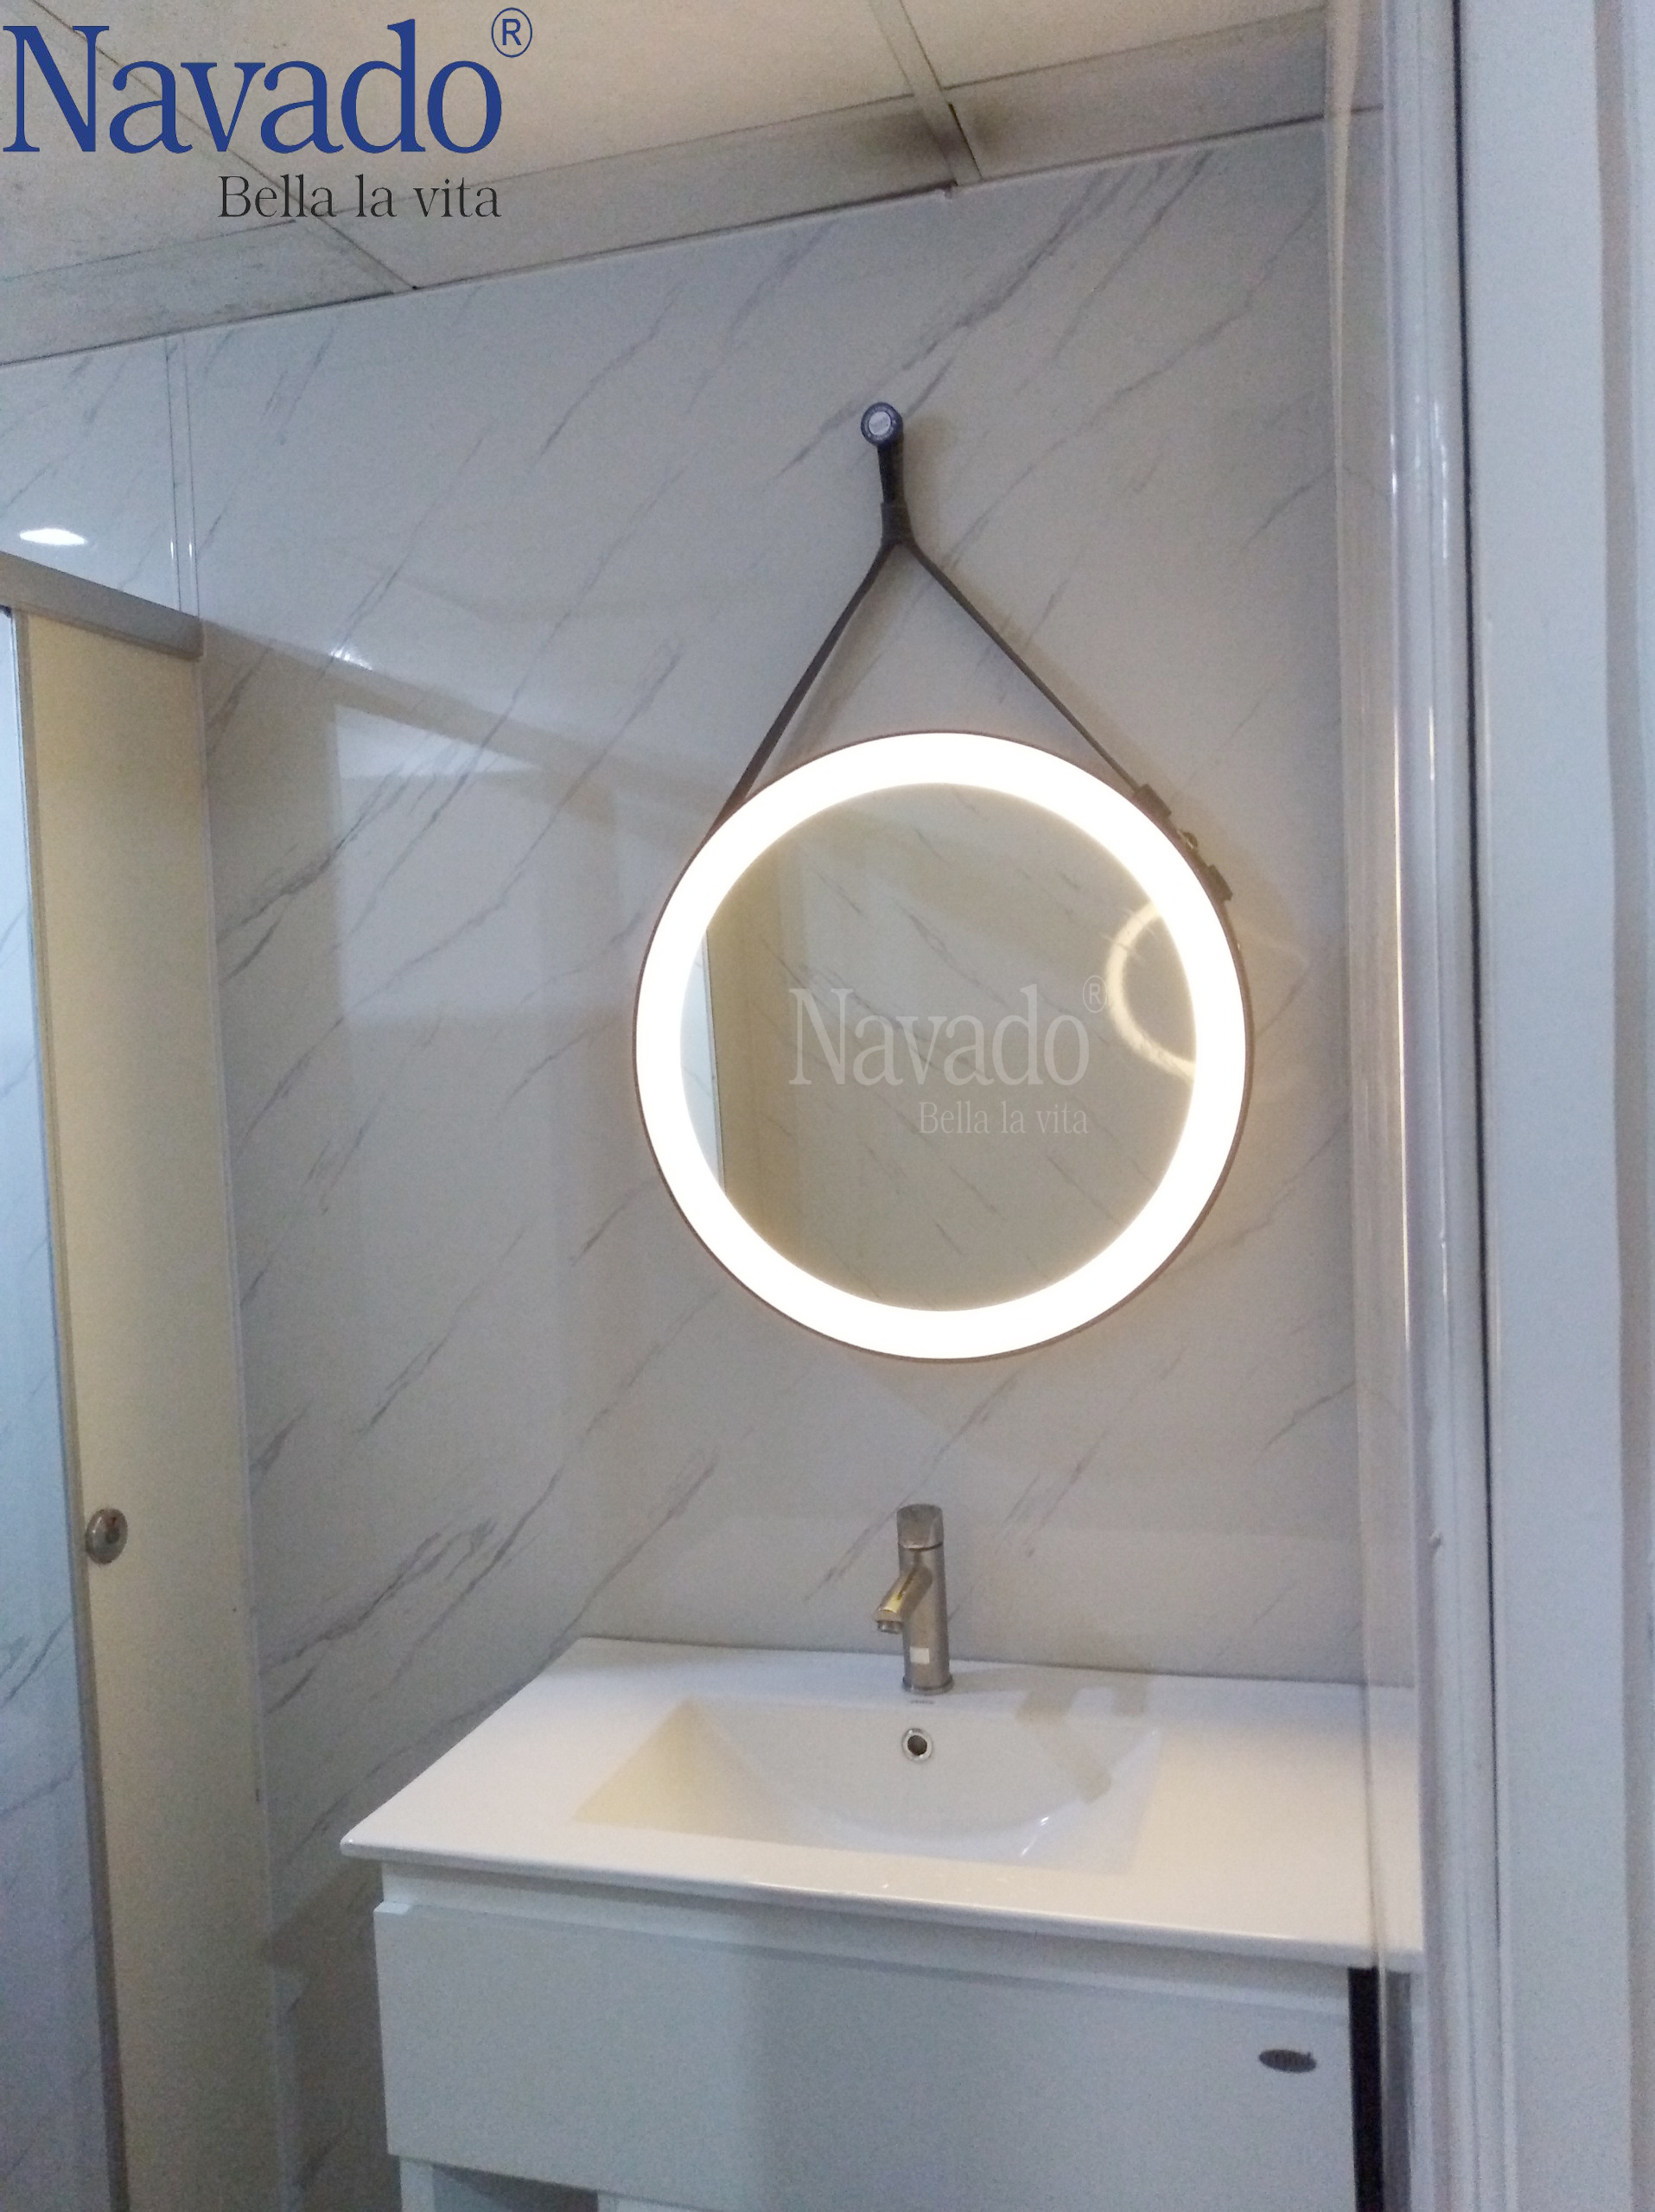 Gương phòng tắm tròn dây da đèn LED – cùng trải nghiệm sự kết hợp hoàn hảo giữa thiết kế đơn giản, trang trọng và hiện đại. Khi được sử dụng, sản phẩm này sẽ biến phòng tắm của bạn trở nên lịch sự và ấm cúng hơn bao giờ hết.